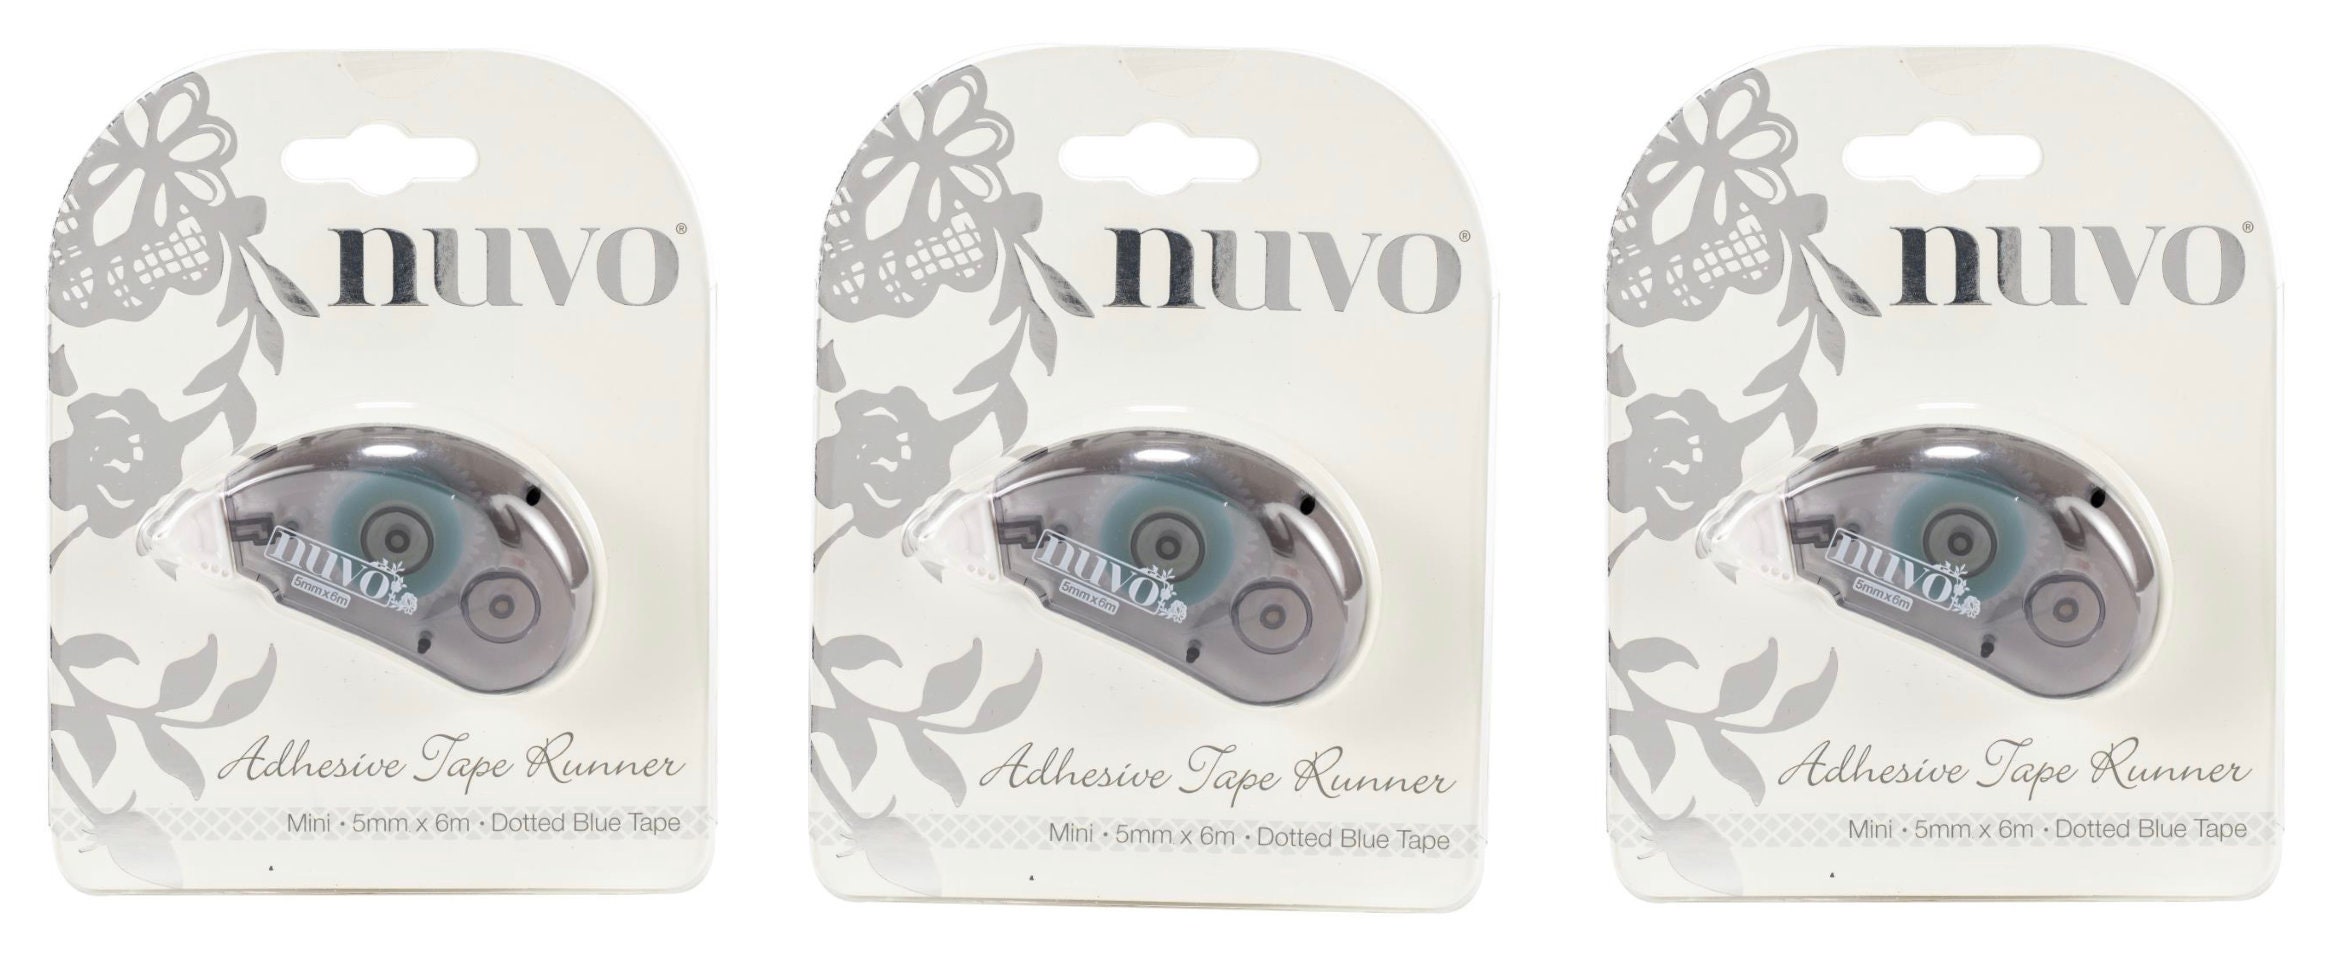 Nuvo Adhesive Tape Runner